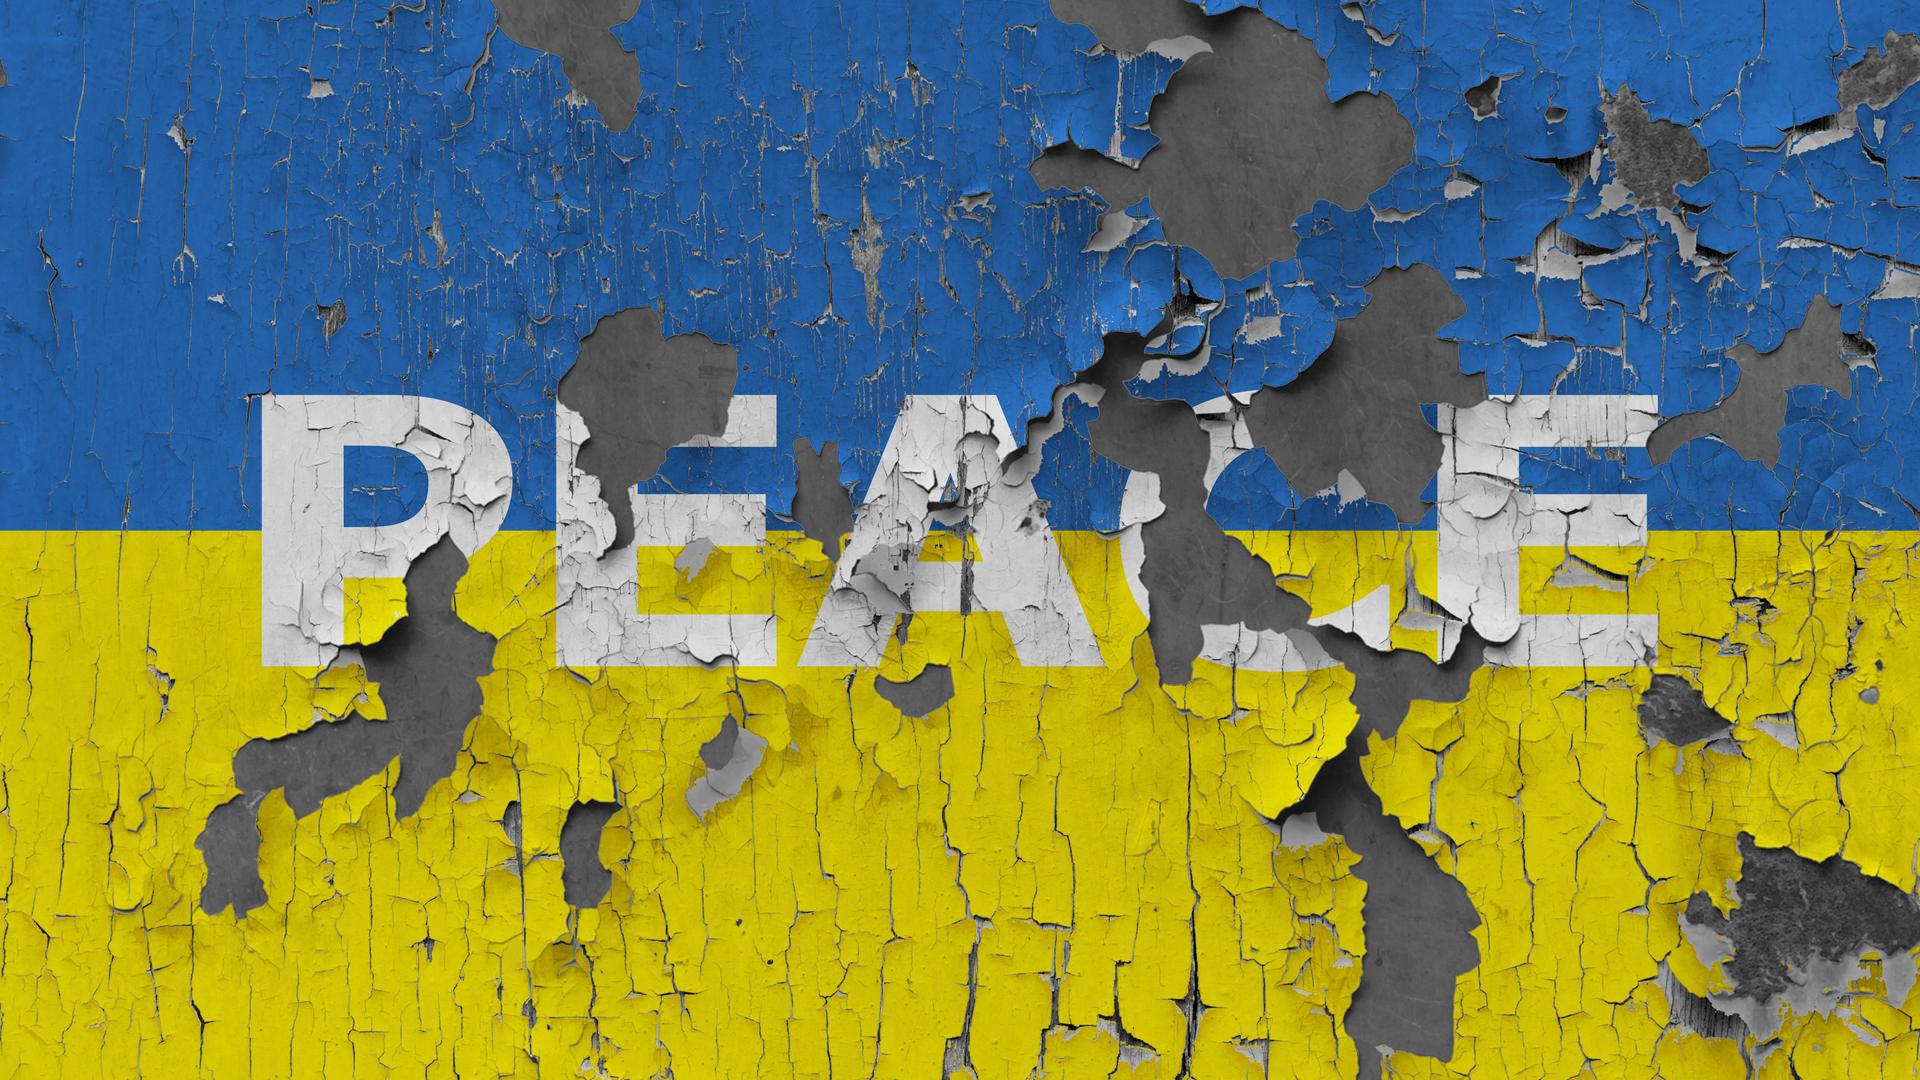 Illustration: Abgeblätterte "Peace" Schrift auf einer Wand in der Ukraine, 2022.